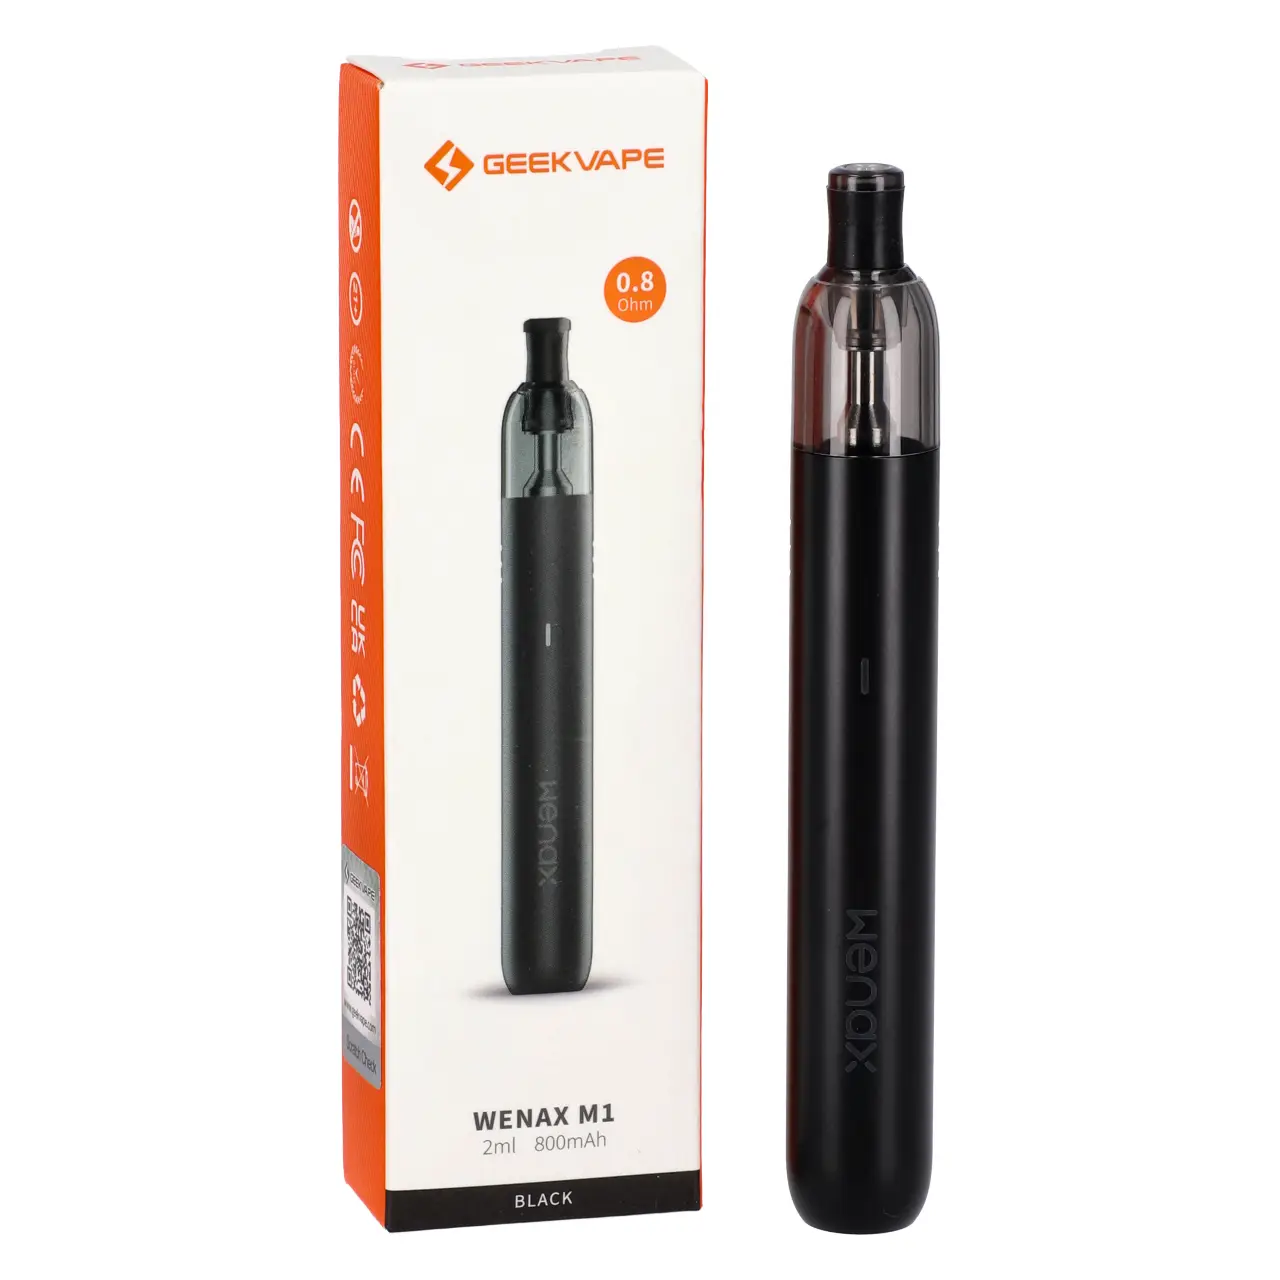 GeekVape Wenax M1 E-Zigaretten-Set in Black mit Verpackung